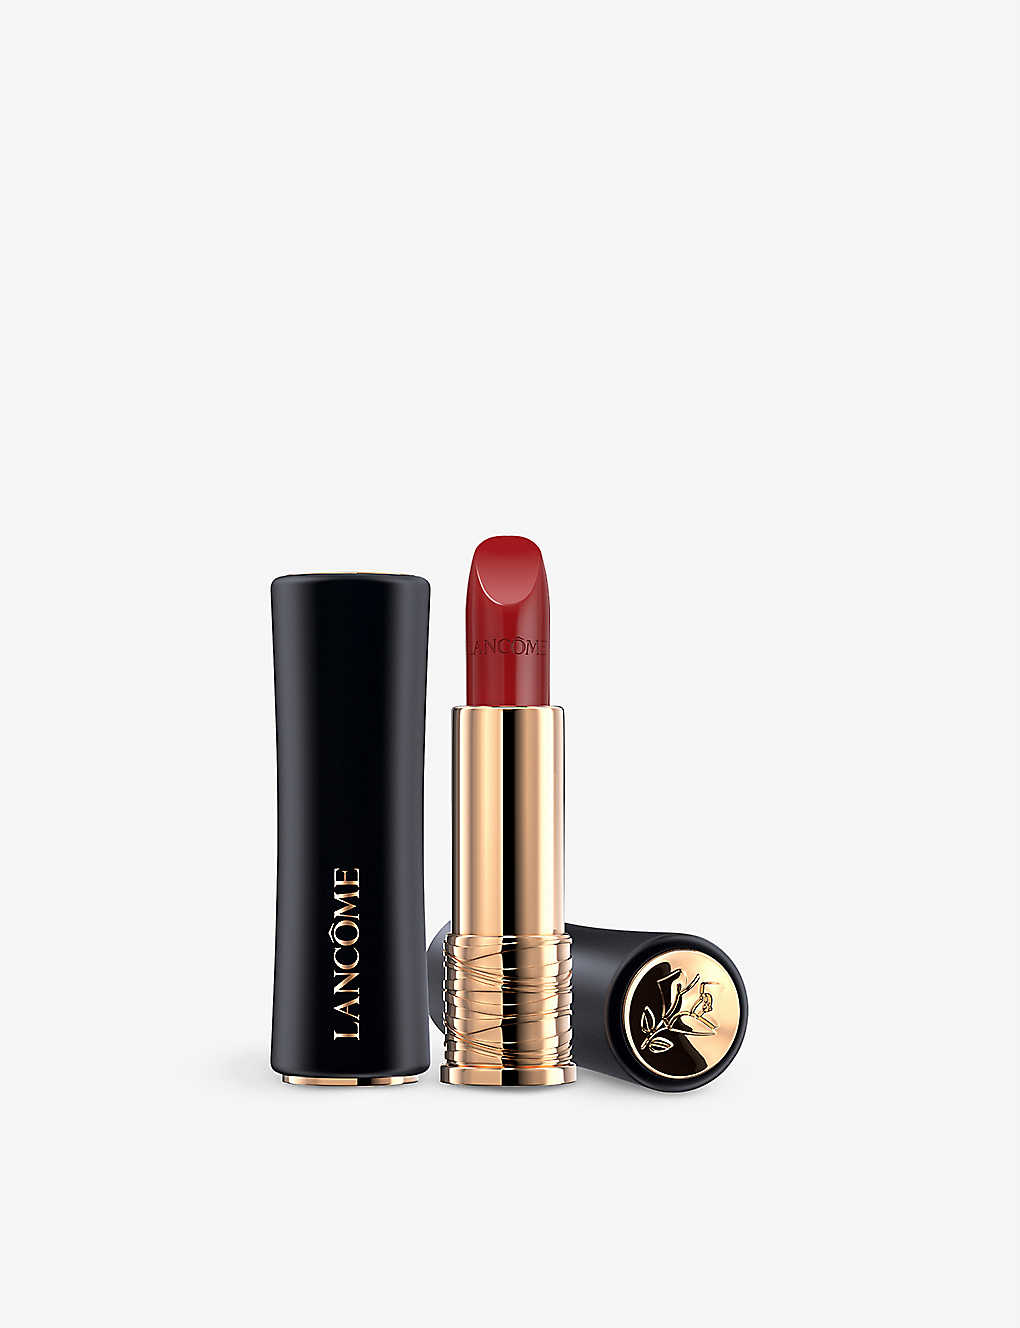 Lancôme L'absolu Rouge Cream Lipstick 3.4g In 143